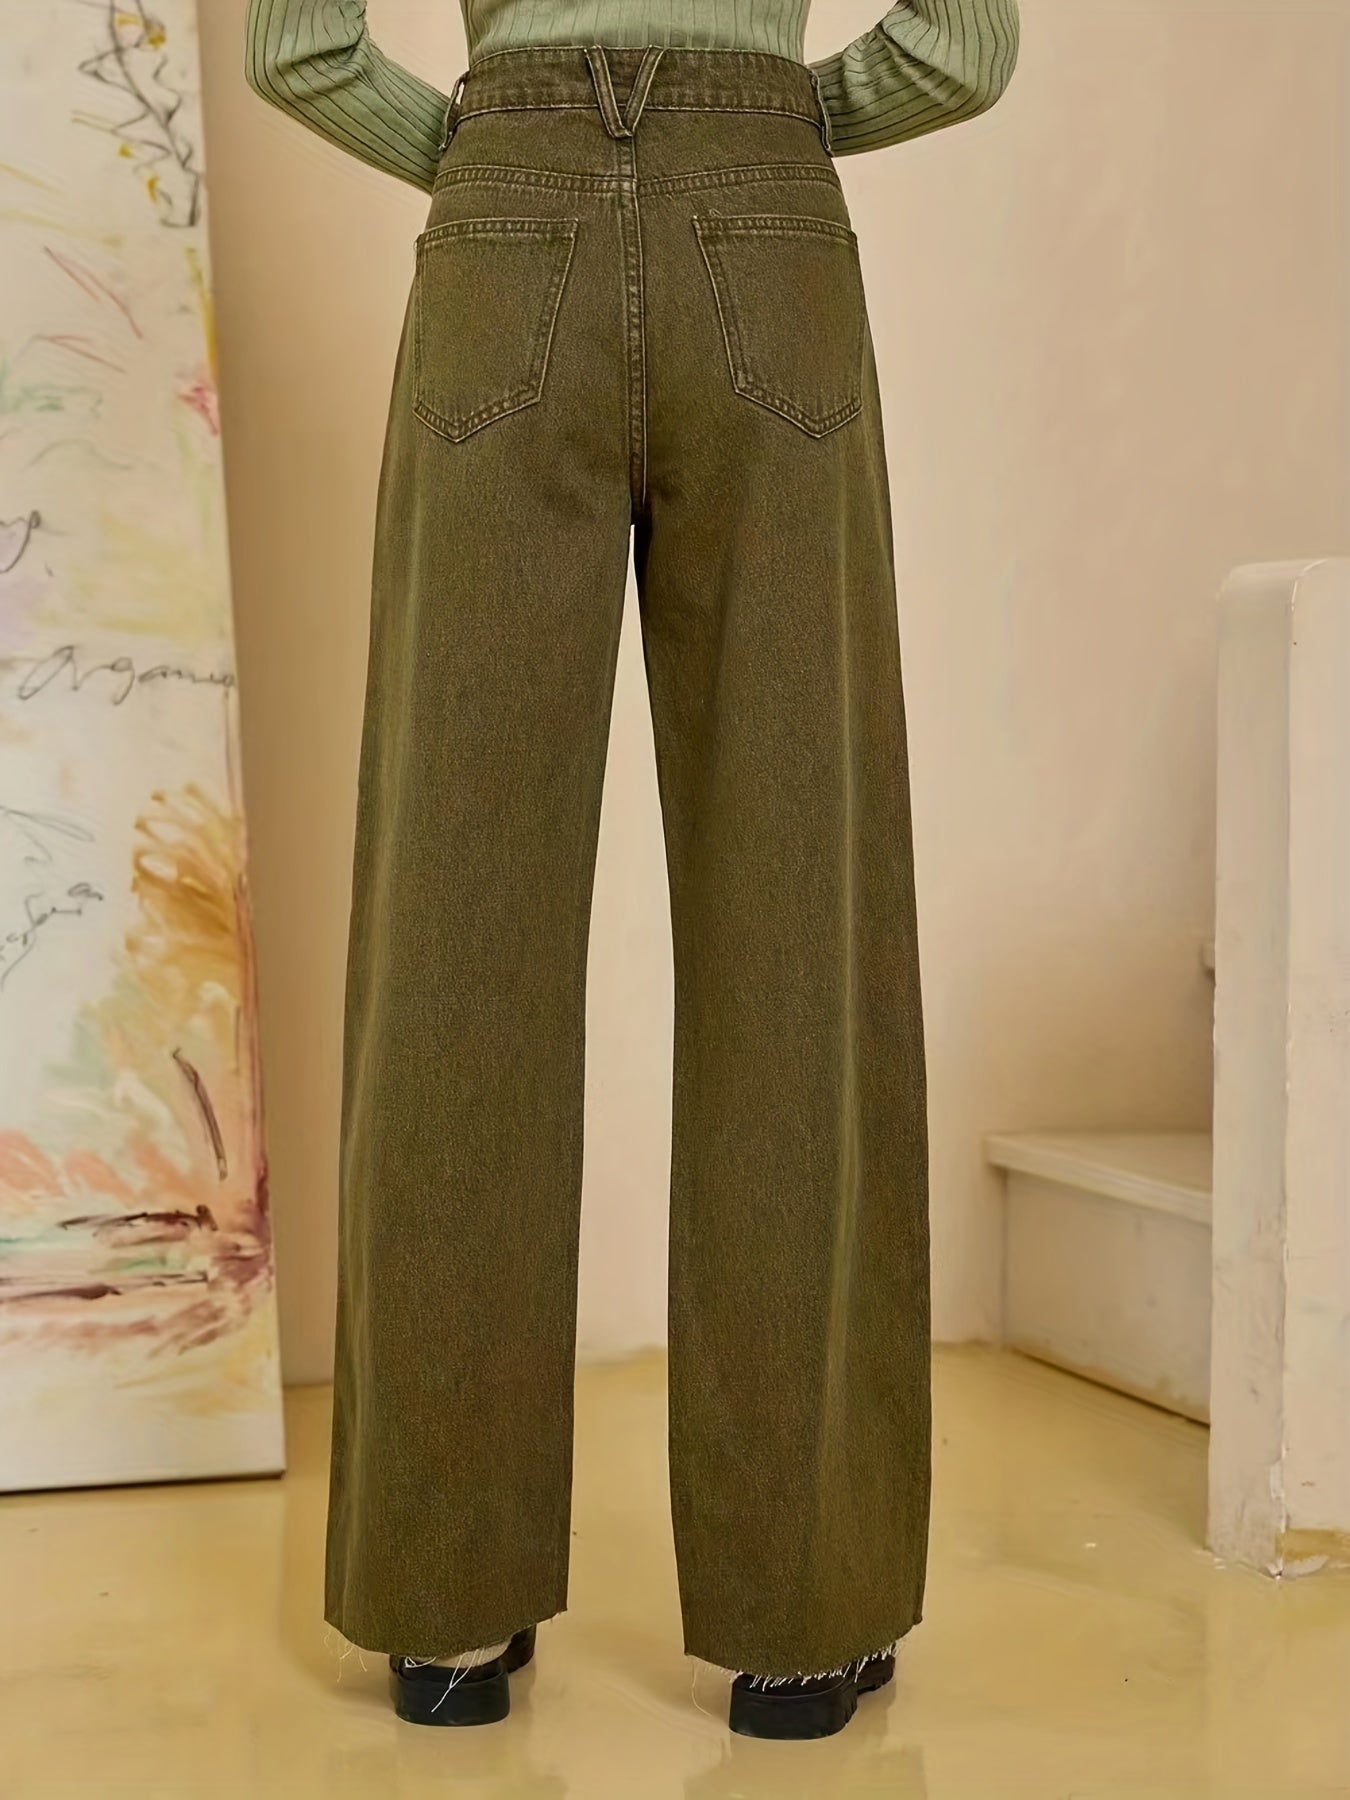 「lovevop」Olive Green Fayed Hem Jeans, Solid Color Slant Pocket Straight Leg Denim Pants, Women's Denim Jeans & Clothing